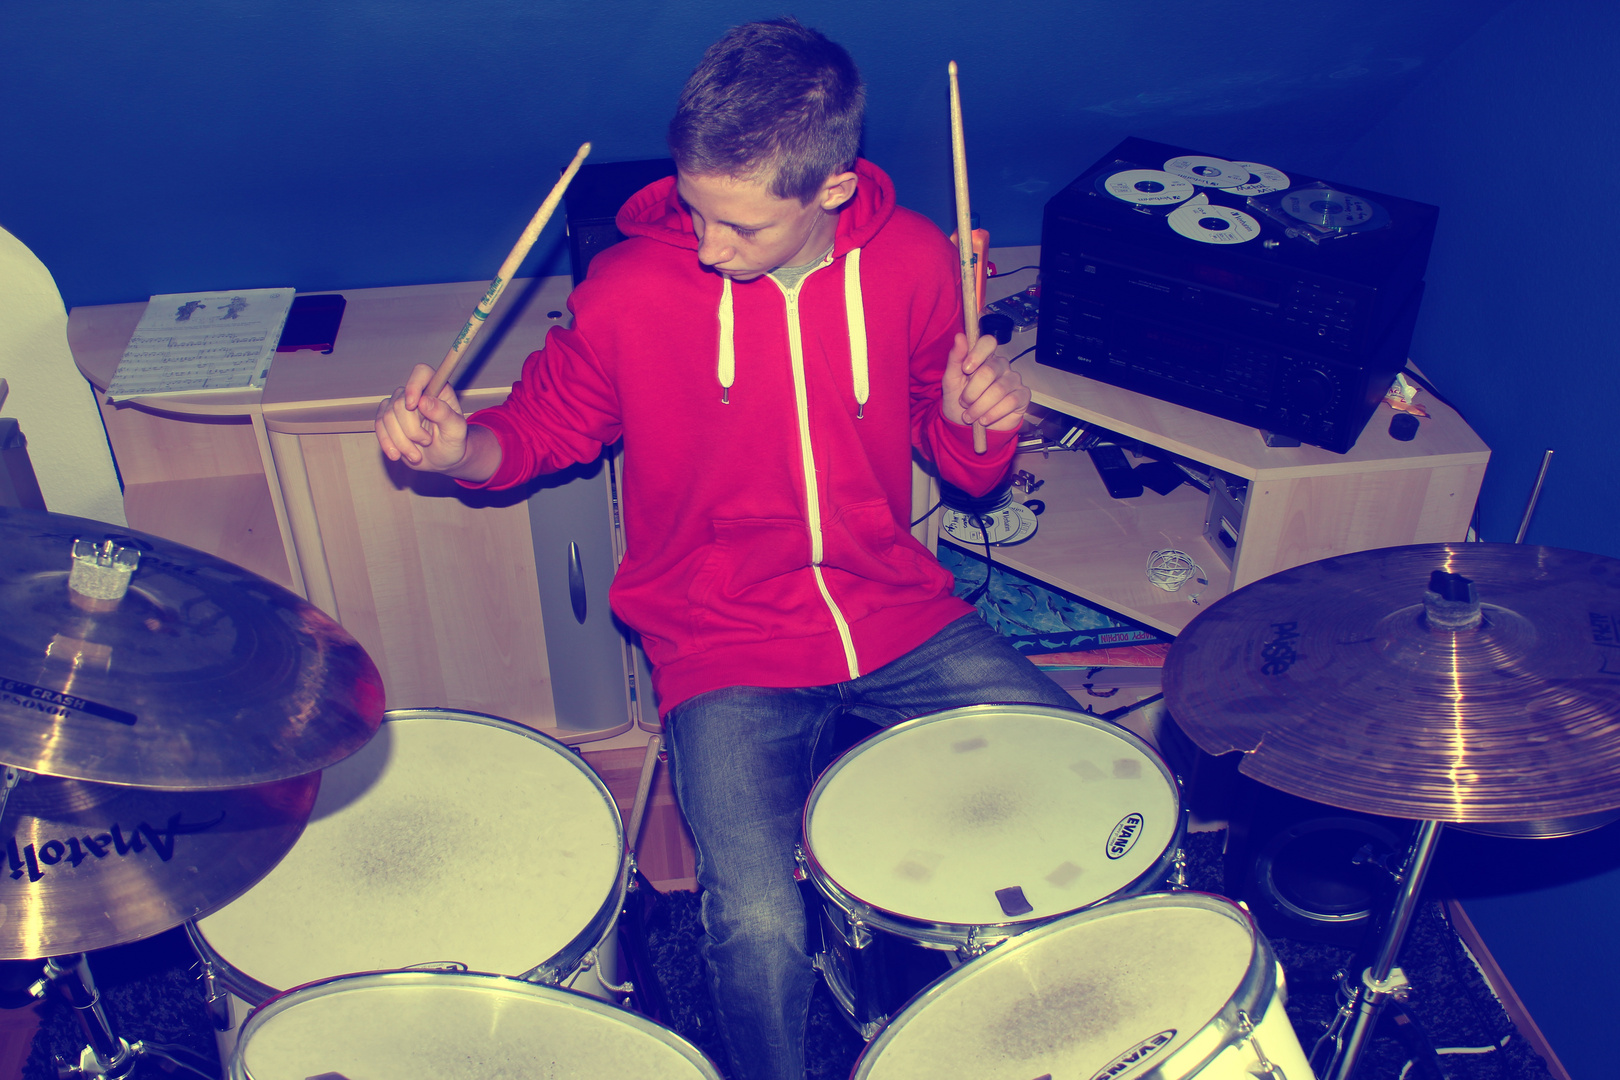 Adi on drums